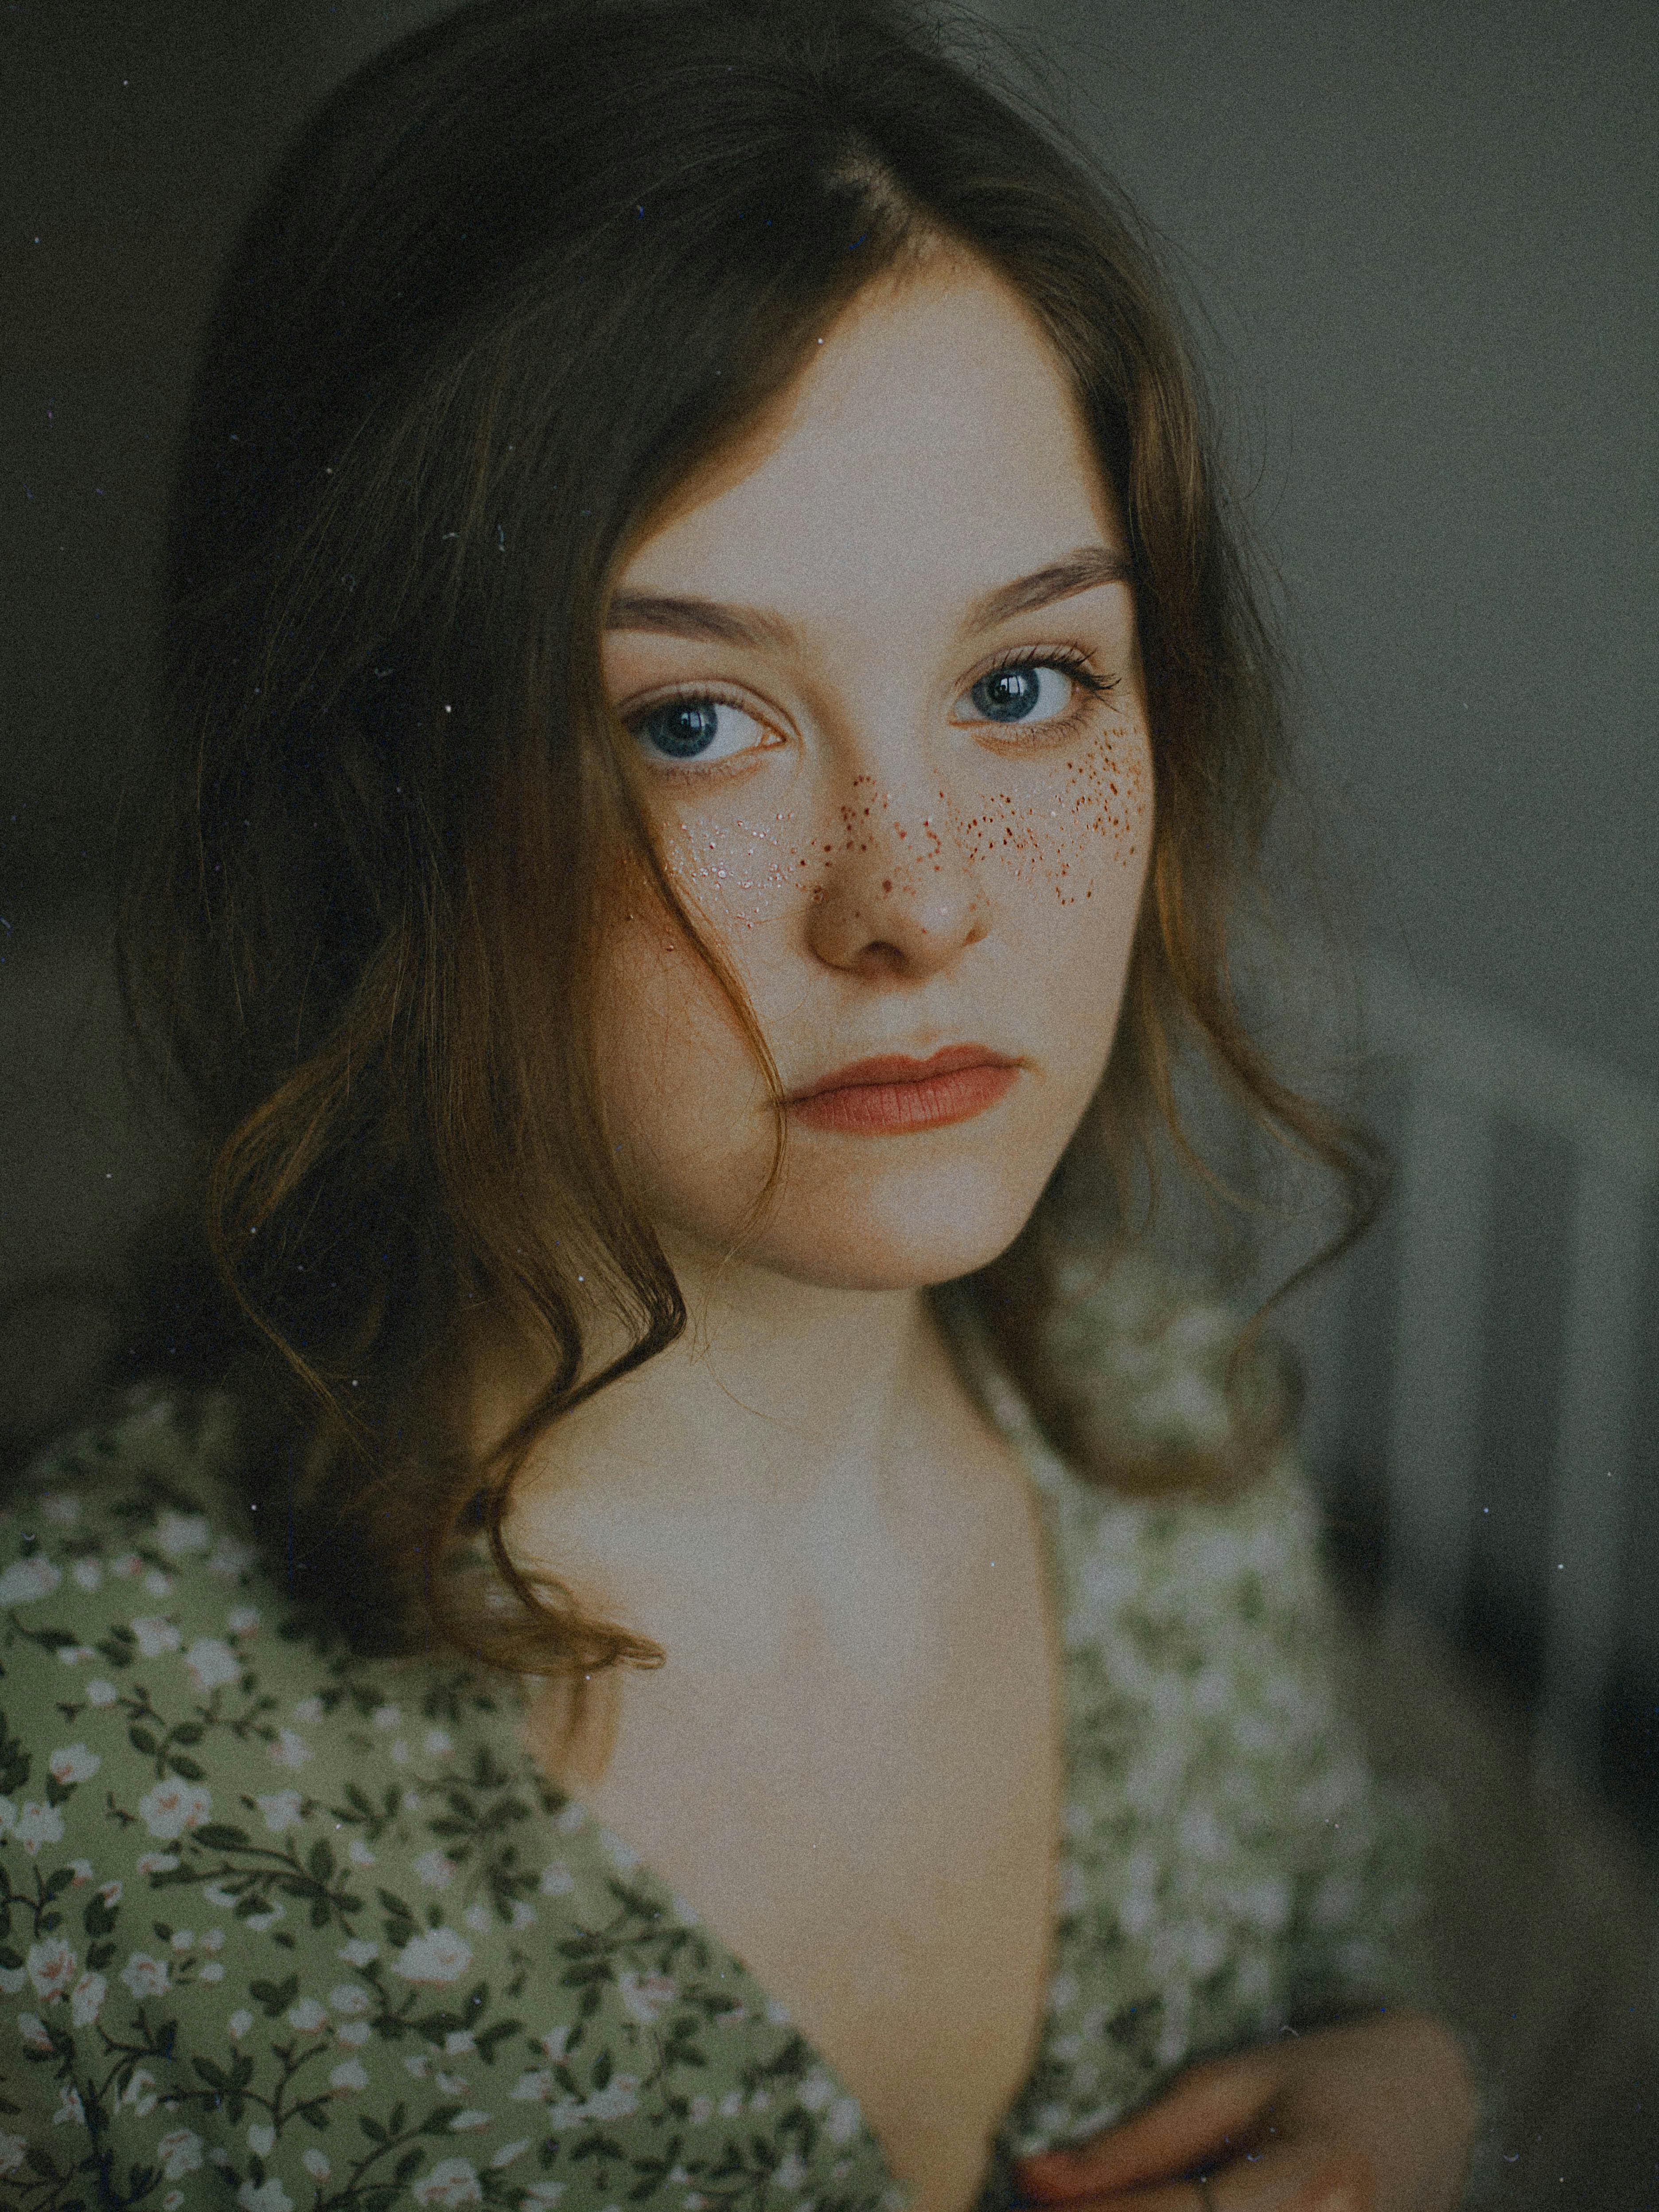 Anxious teenage girl | Source: Pexels